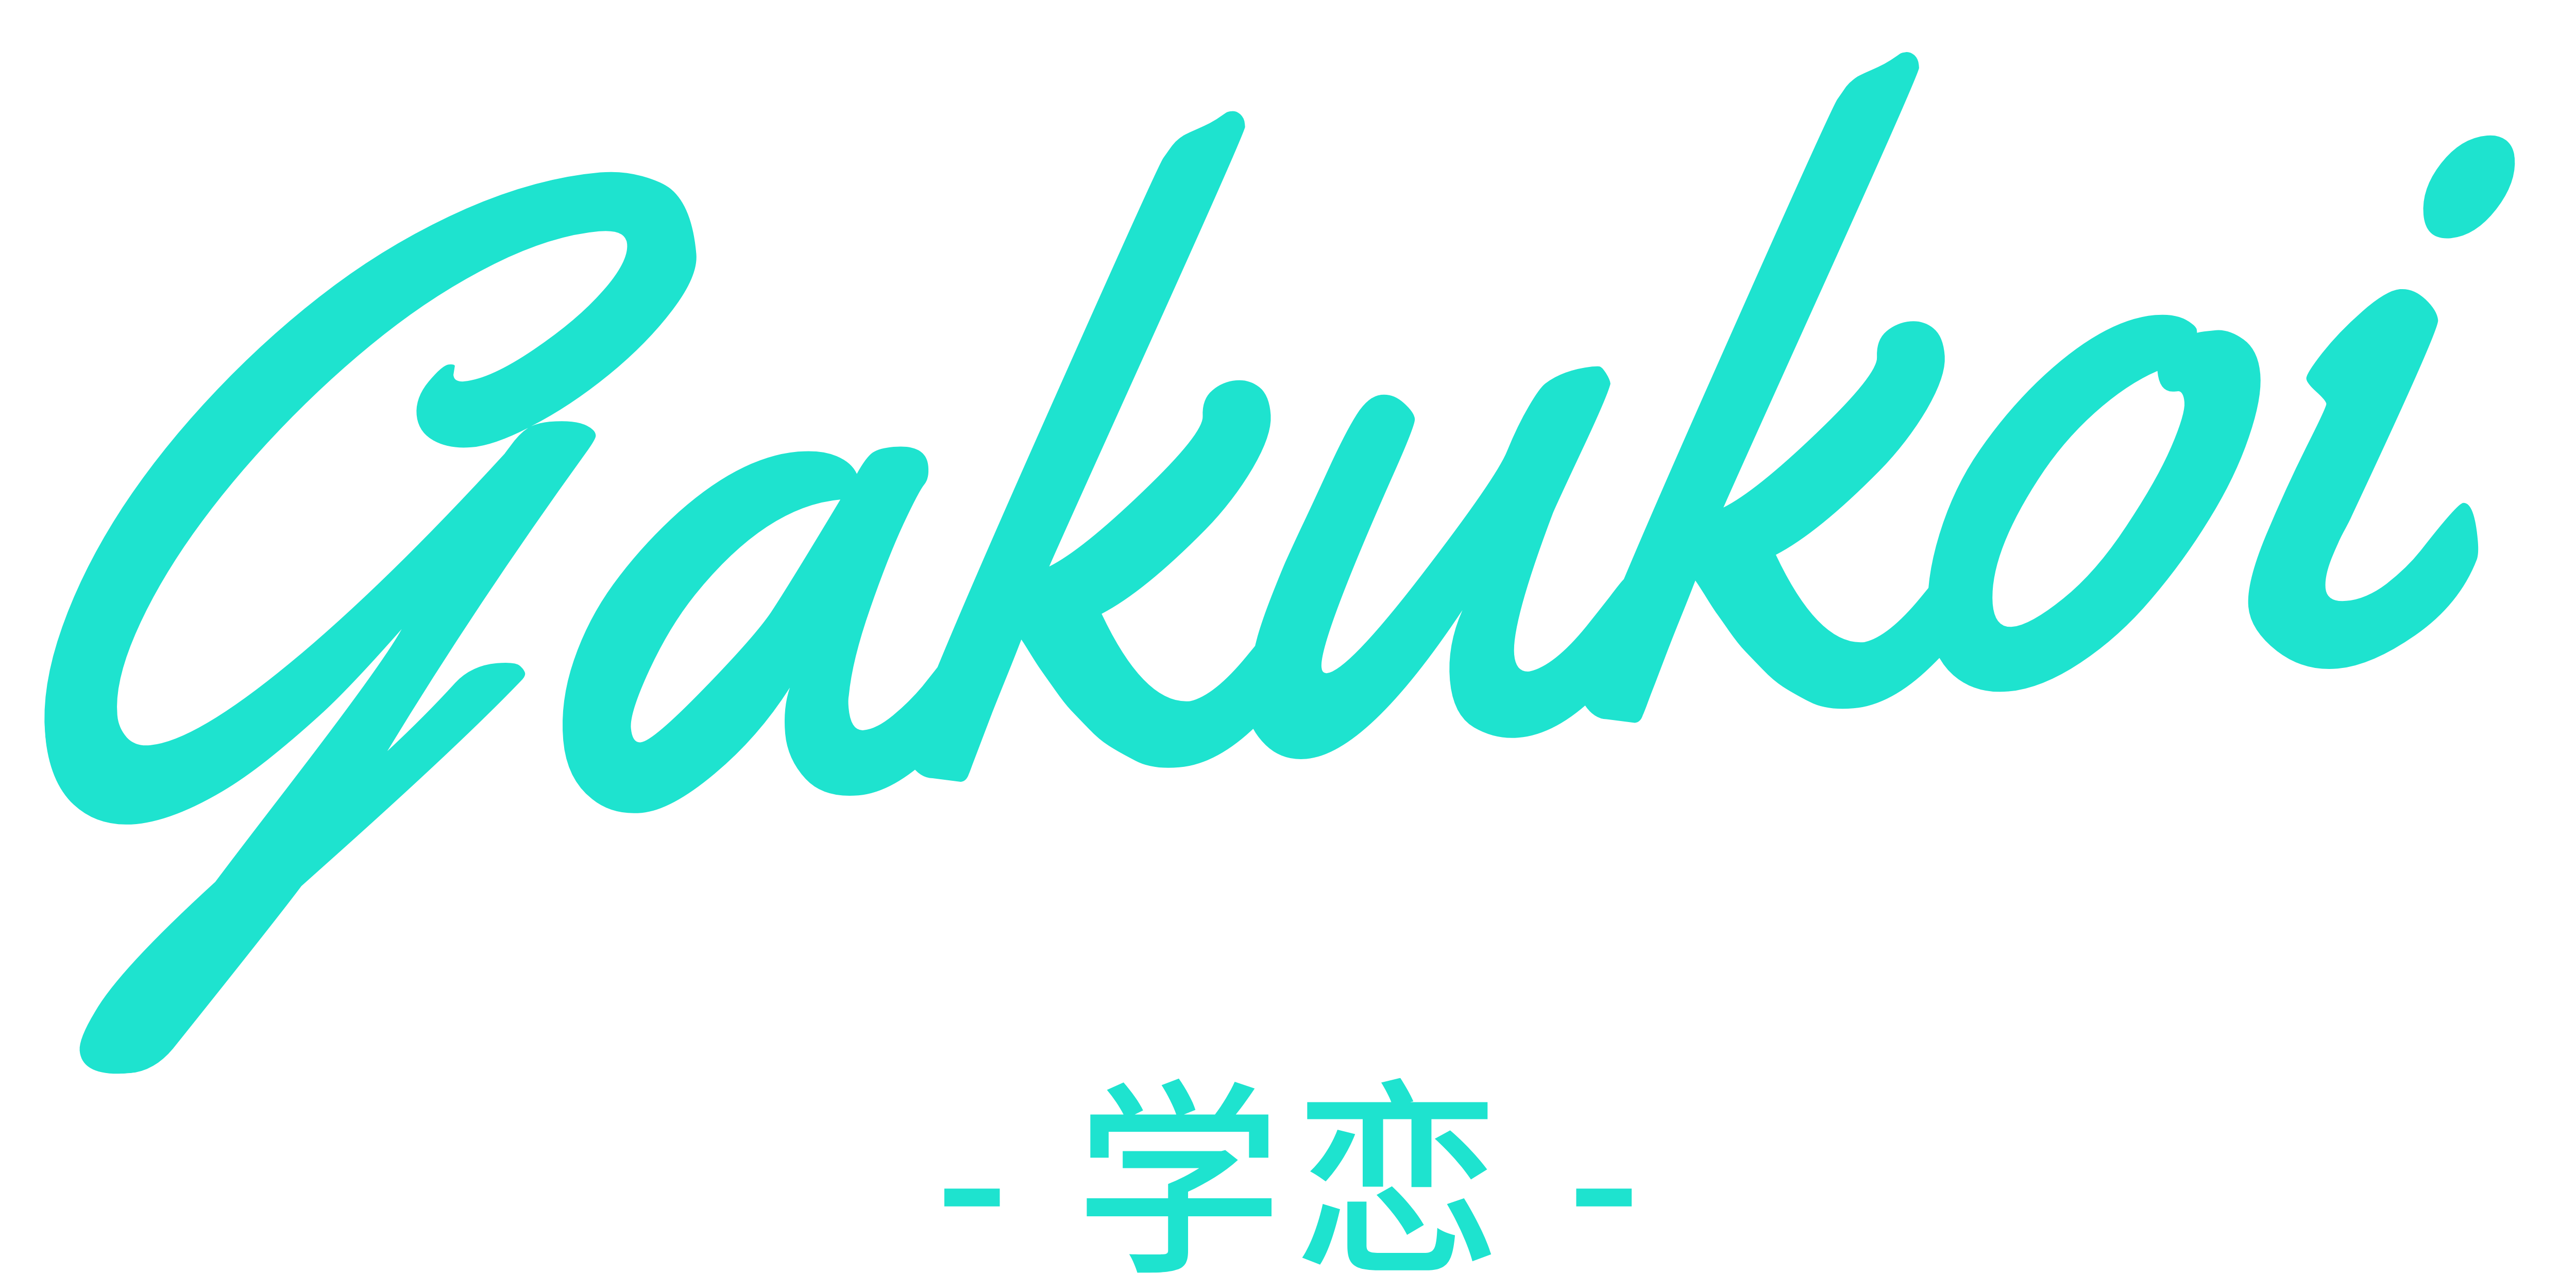 Gakukoi